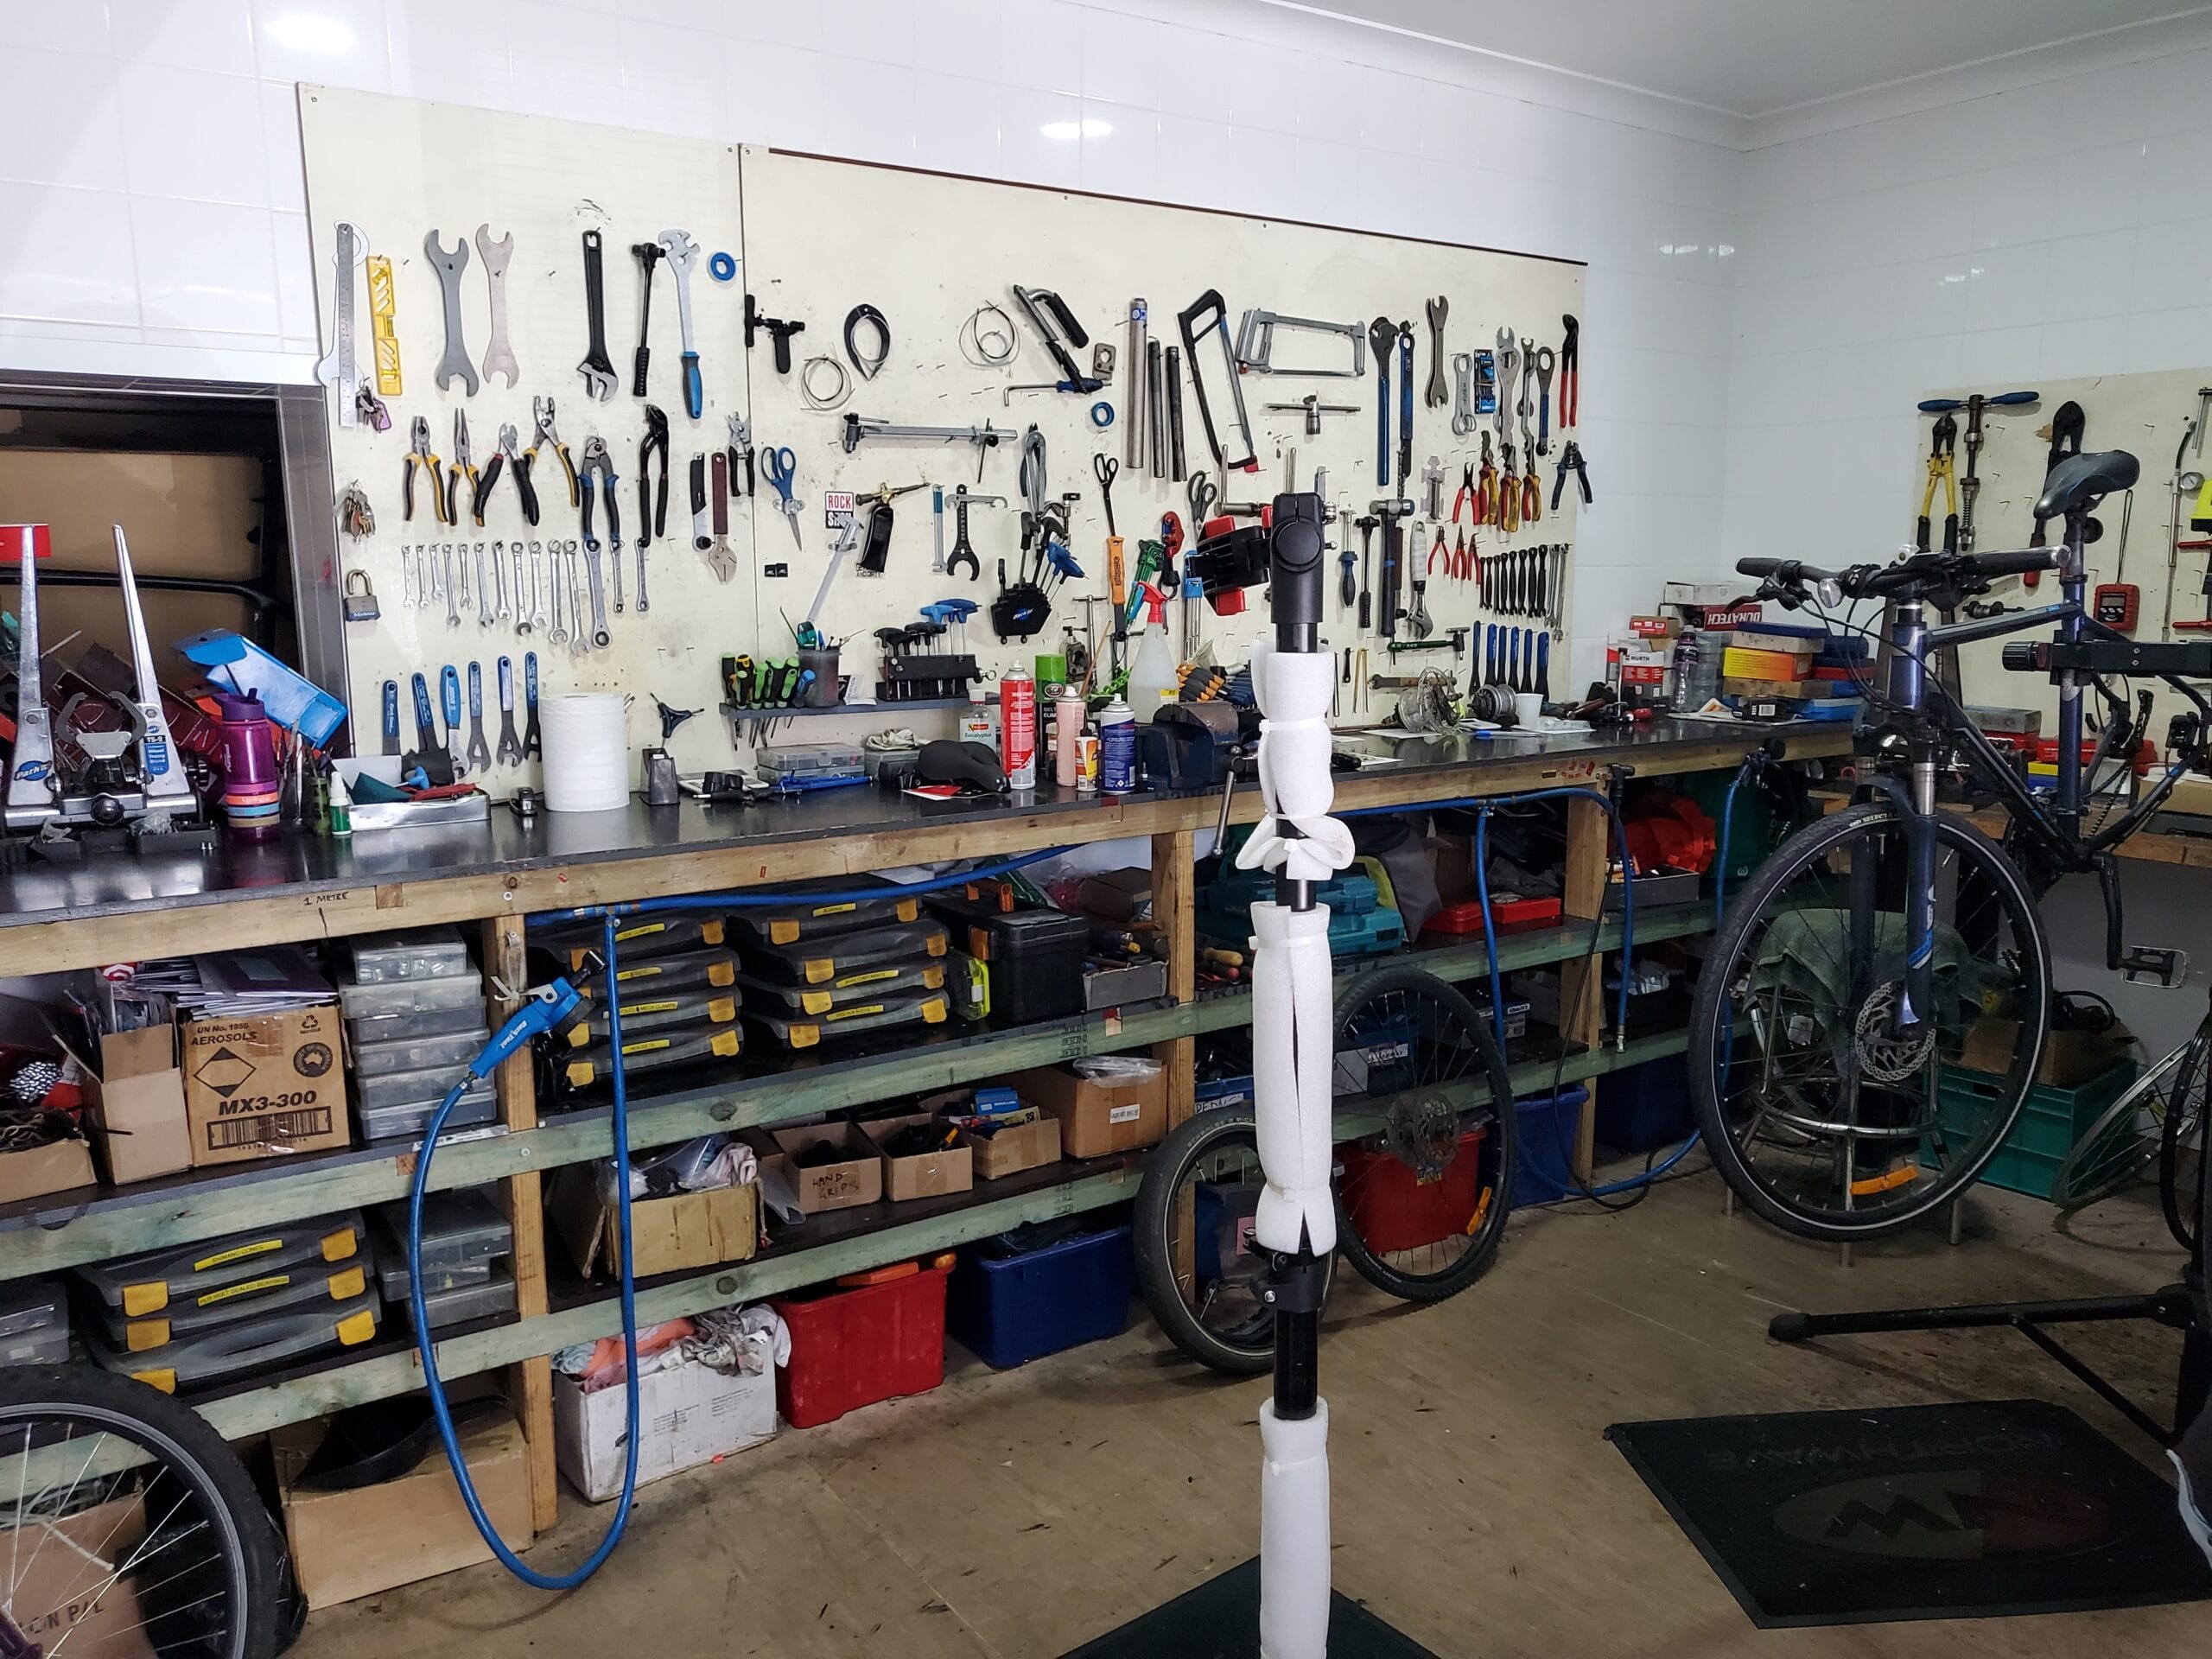 Perth bike service and repairs